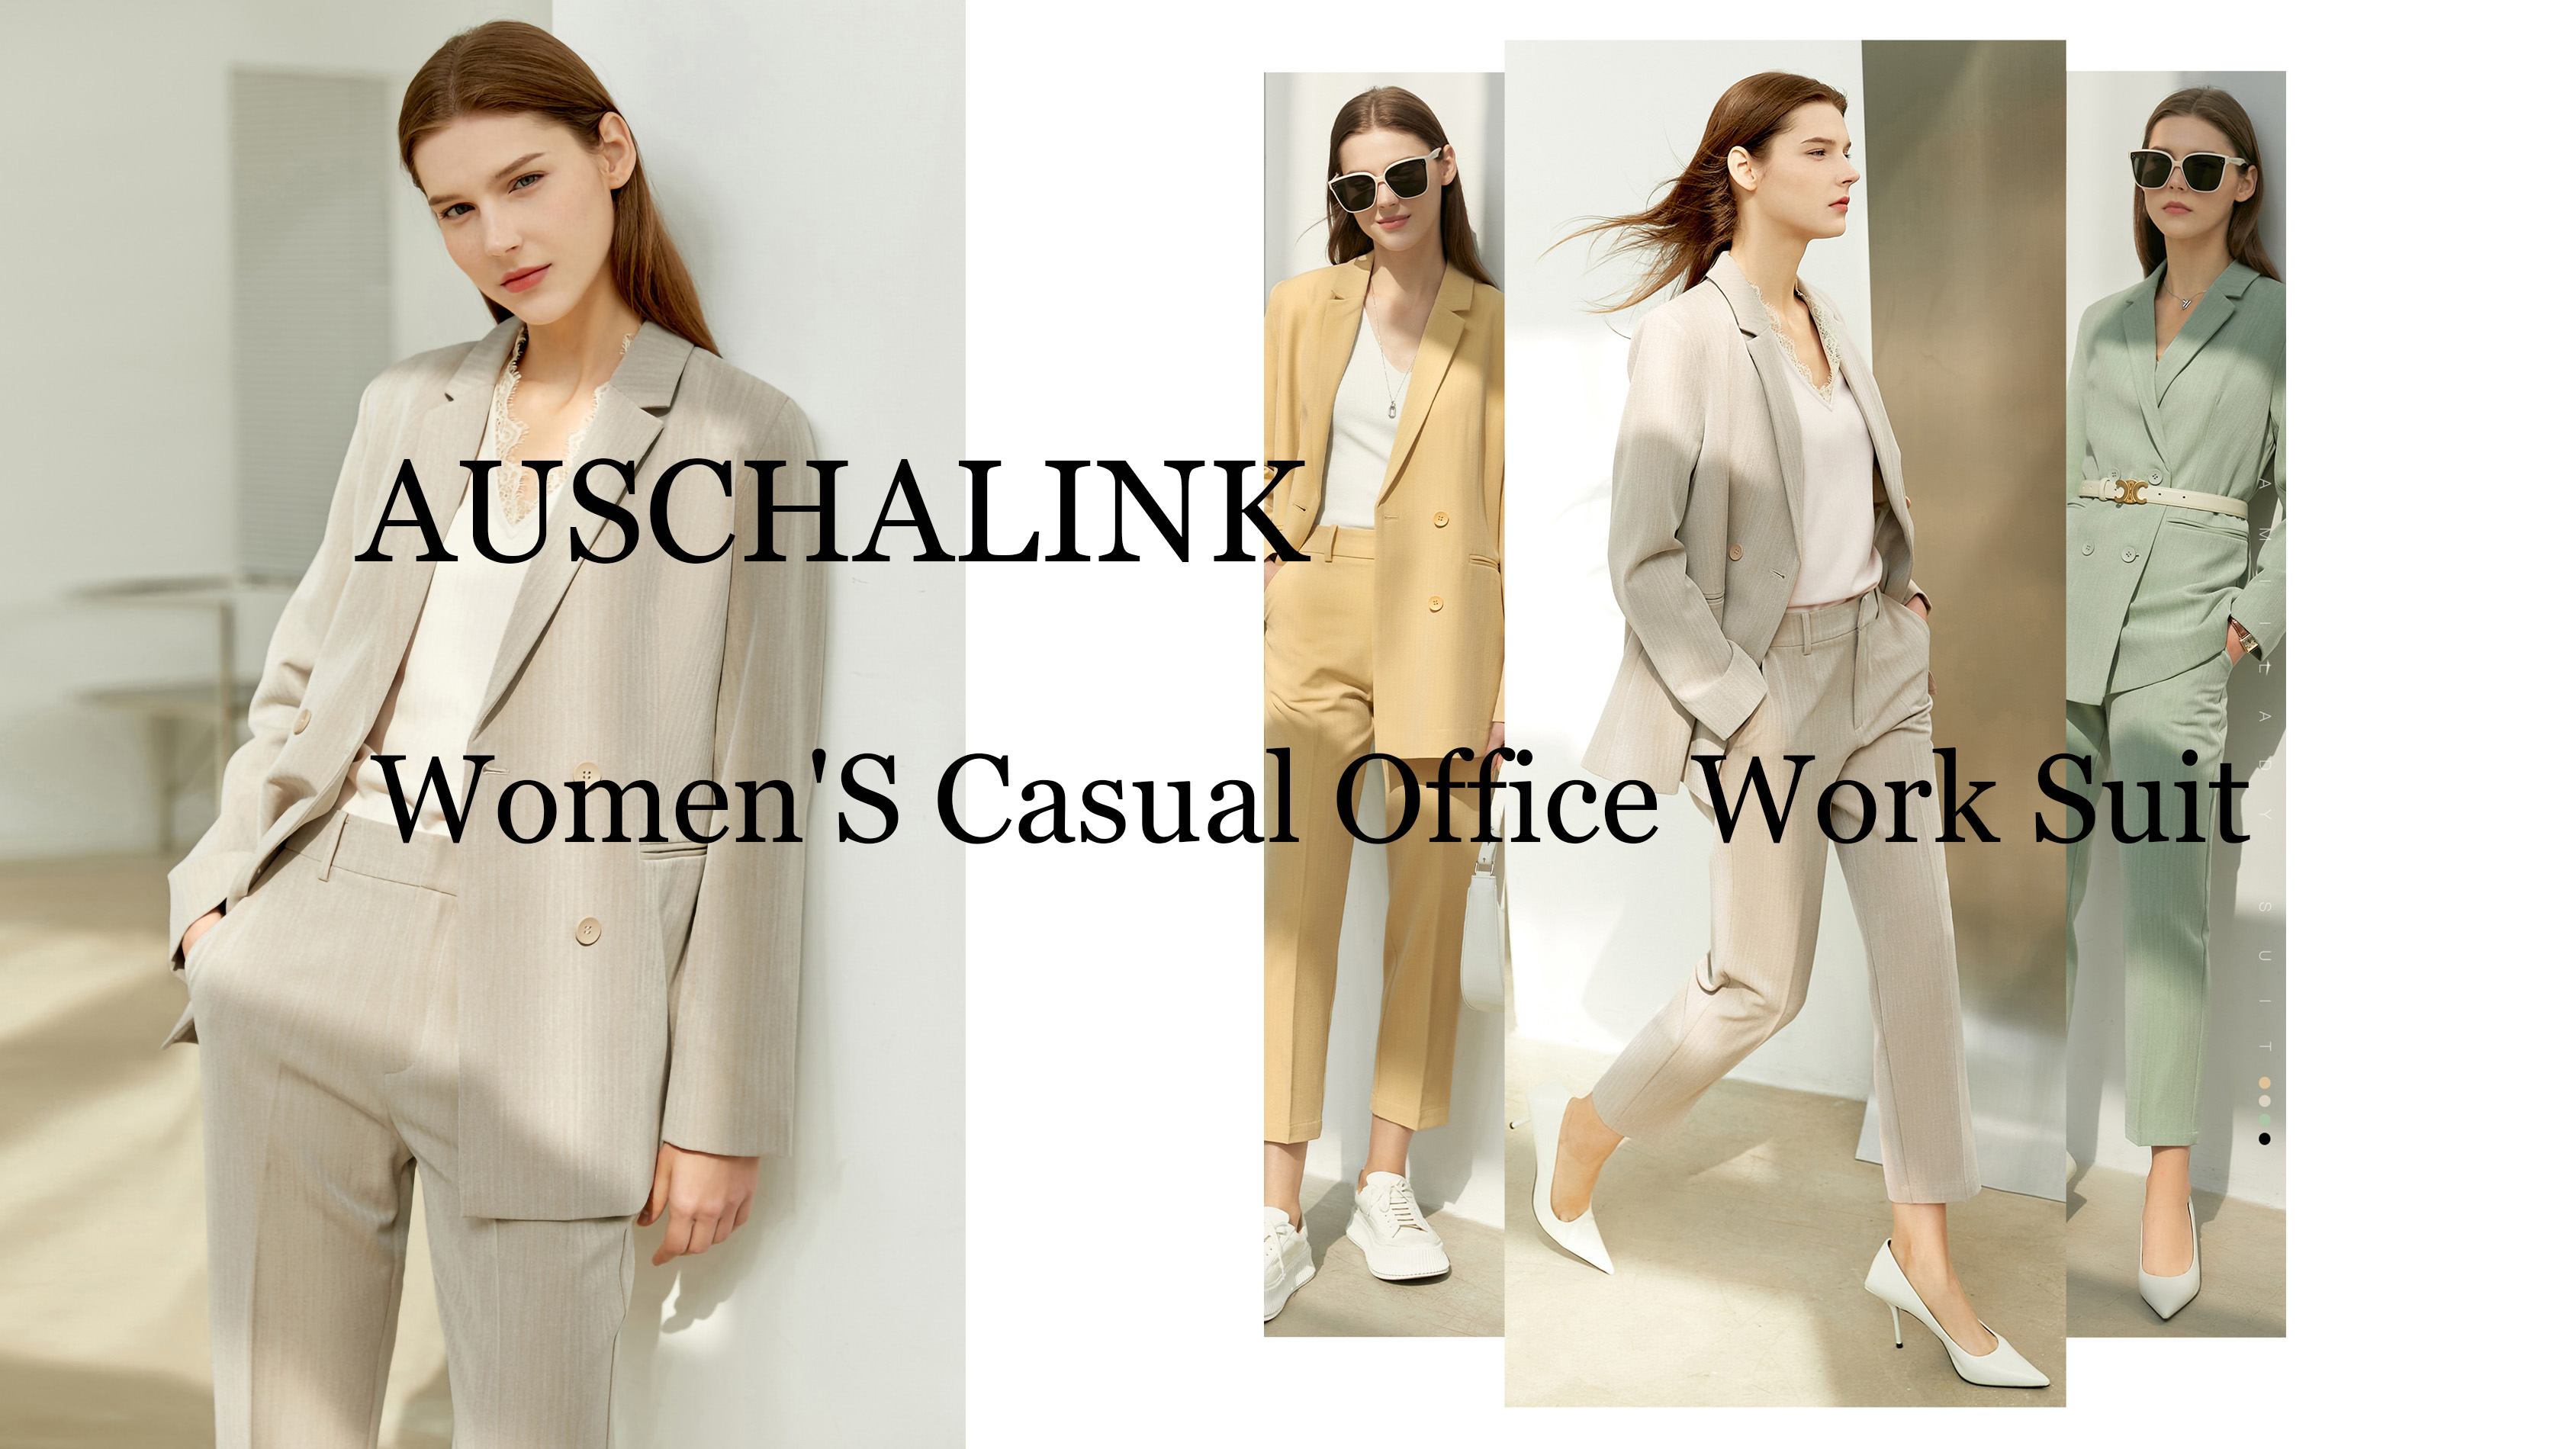 ឈុតការិយាល័យនារីដែលមានគុណភាពខ្ពស់លក់ដុំ - Auschalink Fashion Garment Co., Ltd.